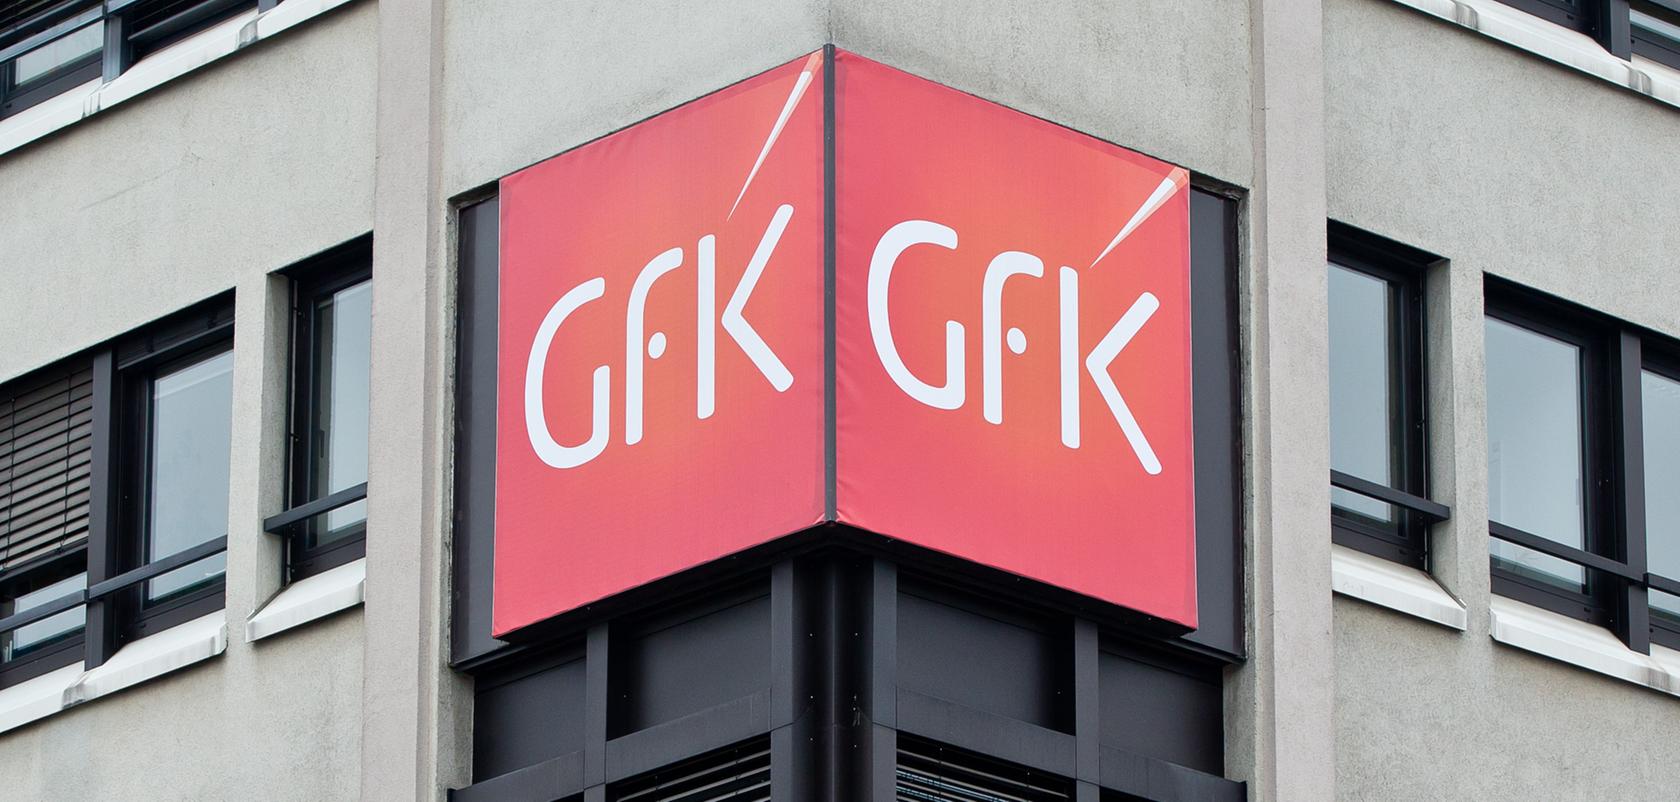 Die maue Auftragslage hat den Marktforscher GfK auch im dritten Quartal in die roten Zahlen gedrückt.